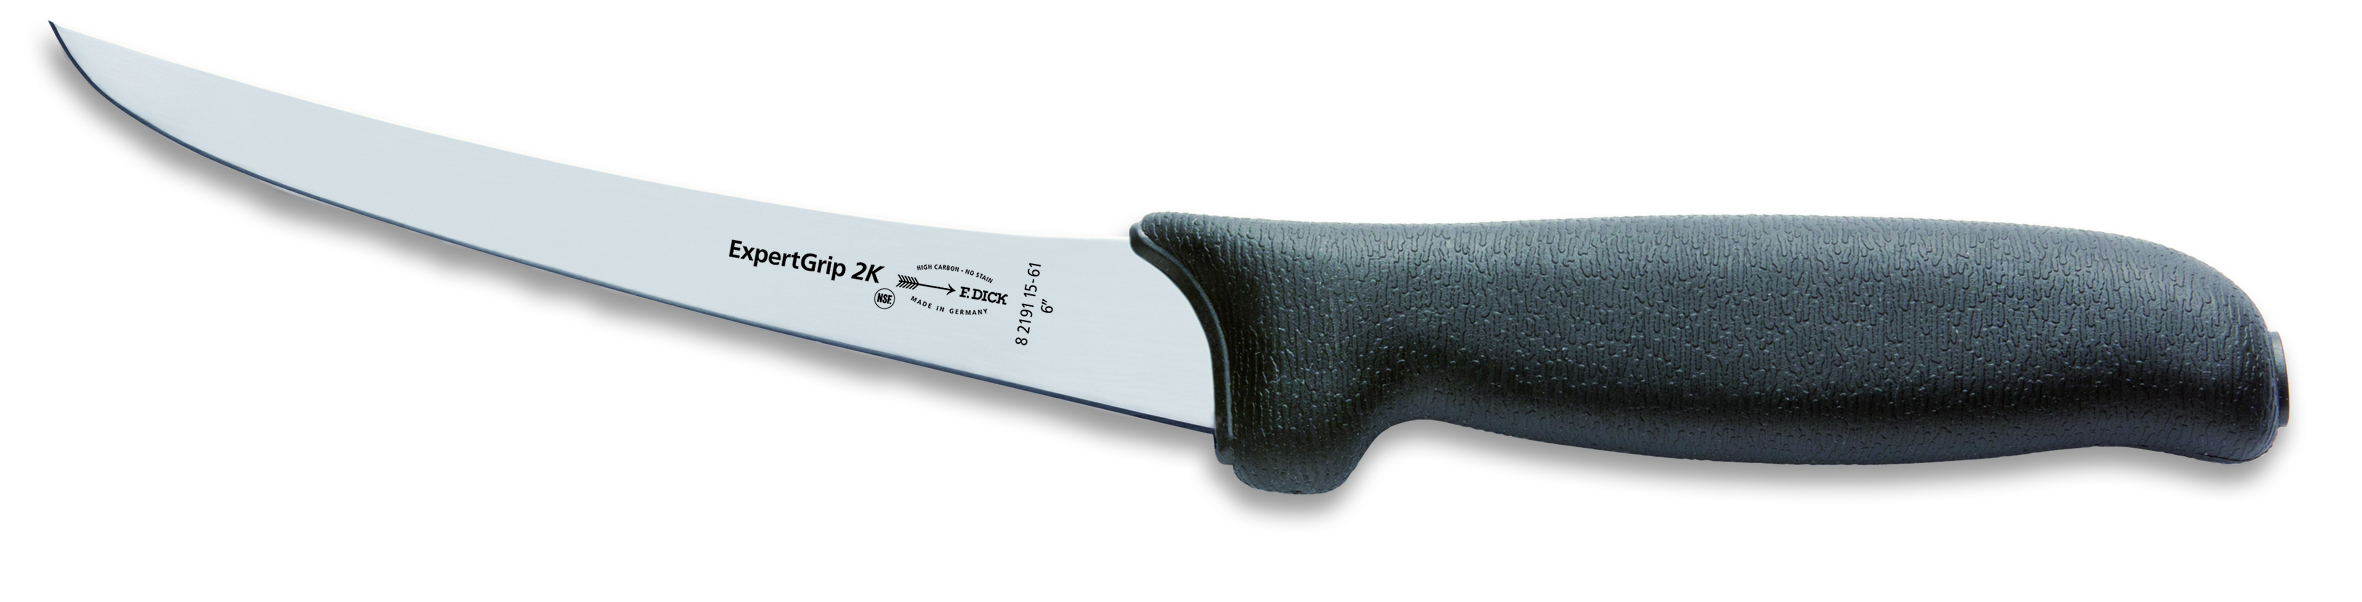 Vykosťovací nůž Dick neohebný v délce 15 cm ze série ExpertGrip, černý